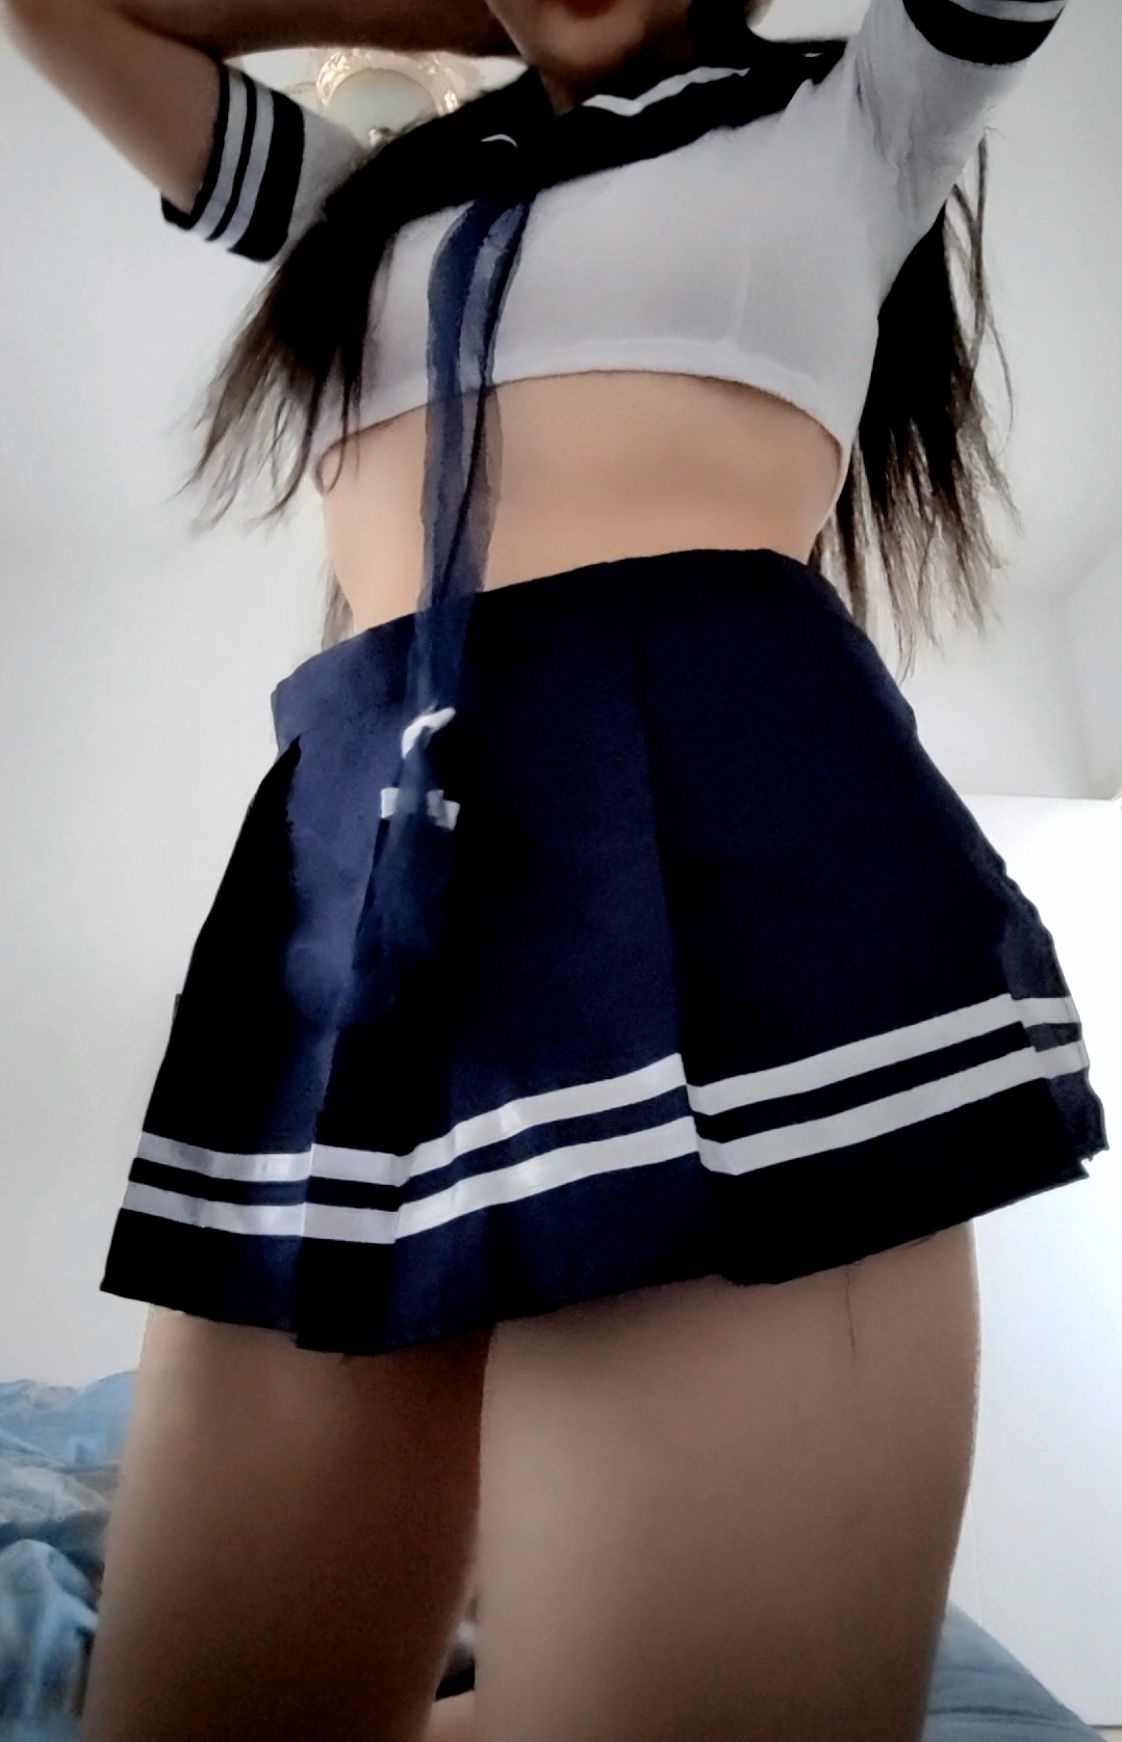 วันนี้คุณชอบชุดนักเรียนชุดนี้ไหม? [18P]